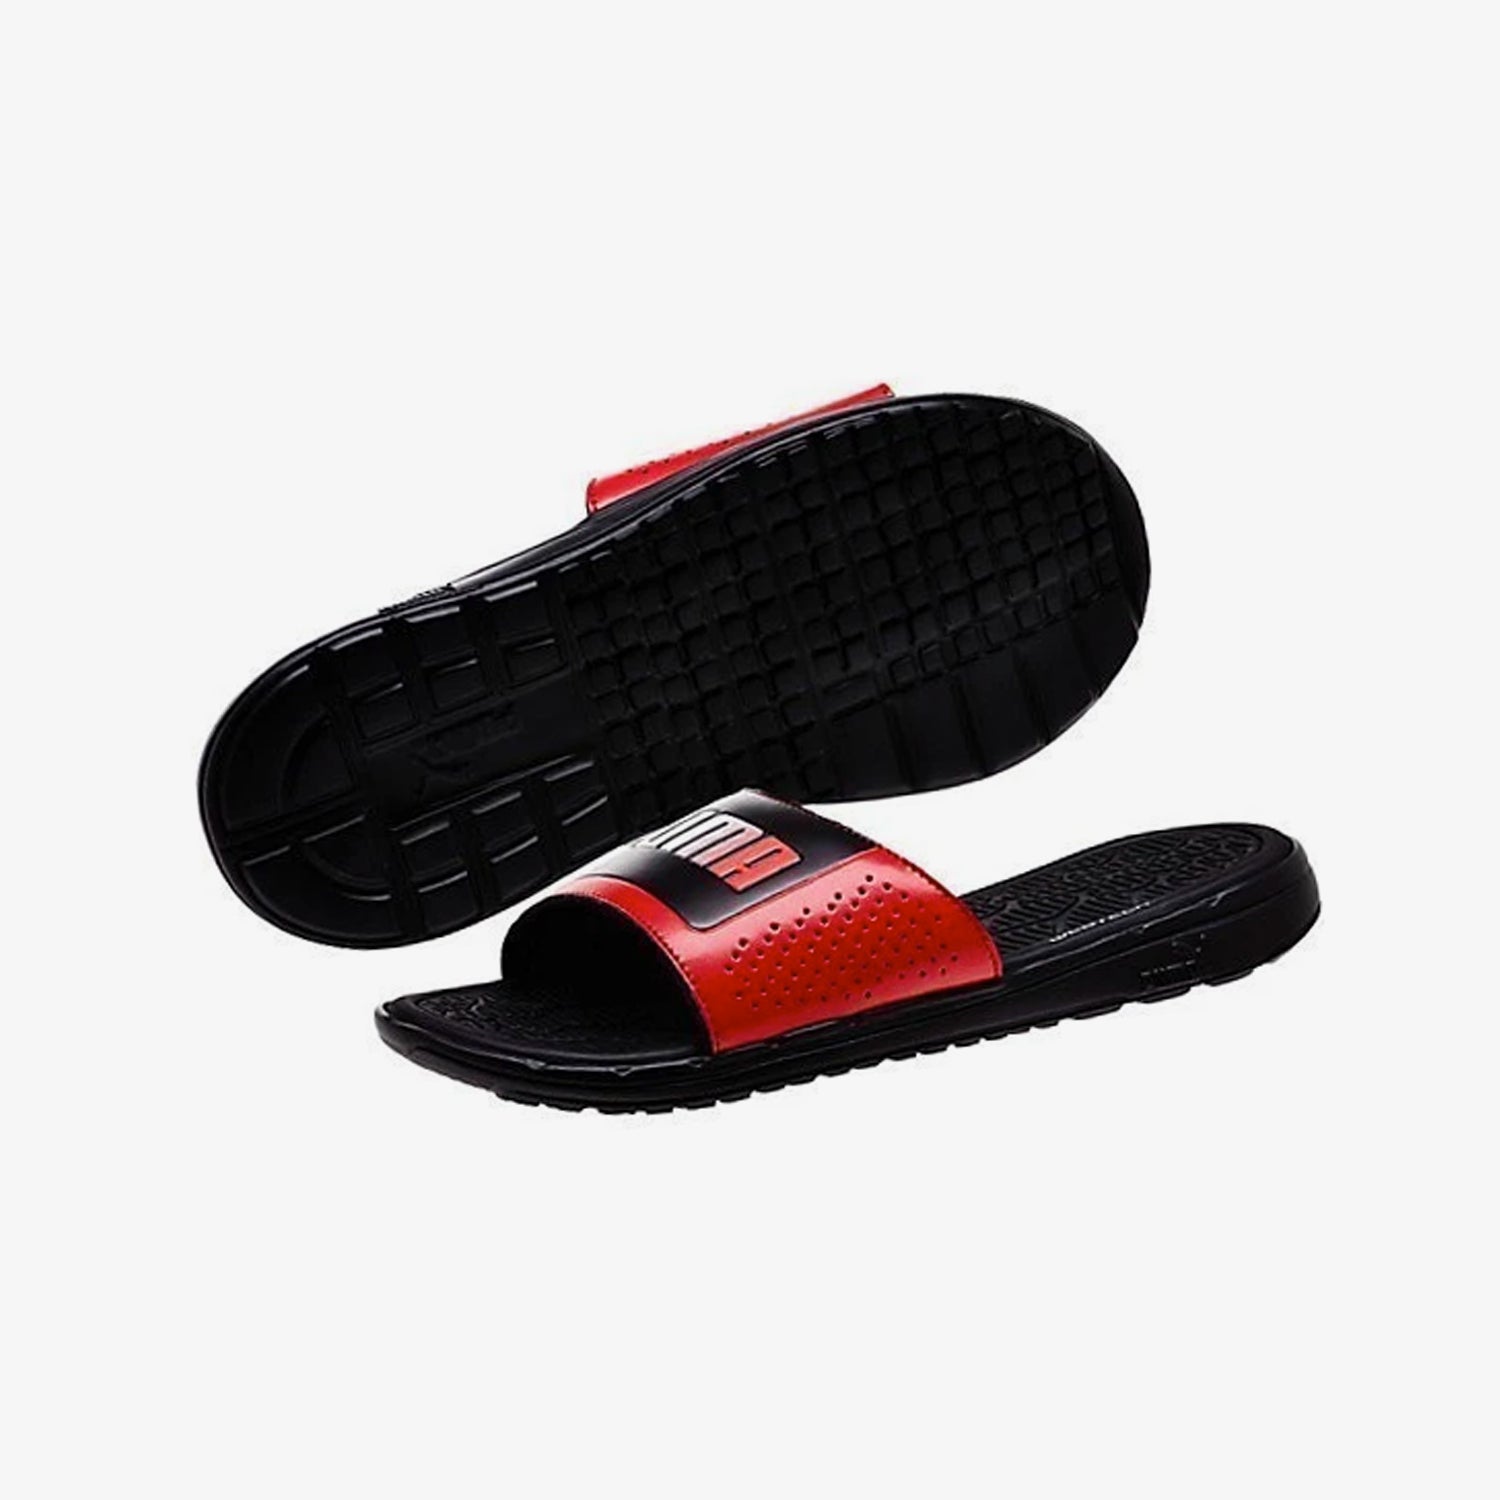 Men's Foamcat Slide Basic Sandals - Black/Red